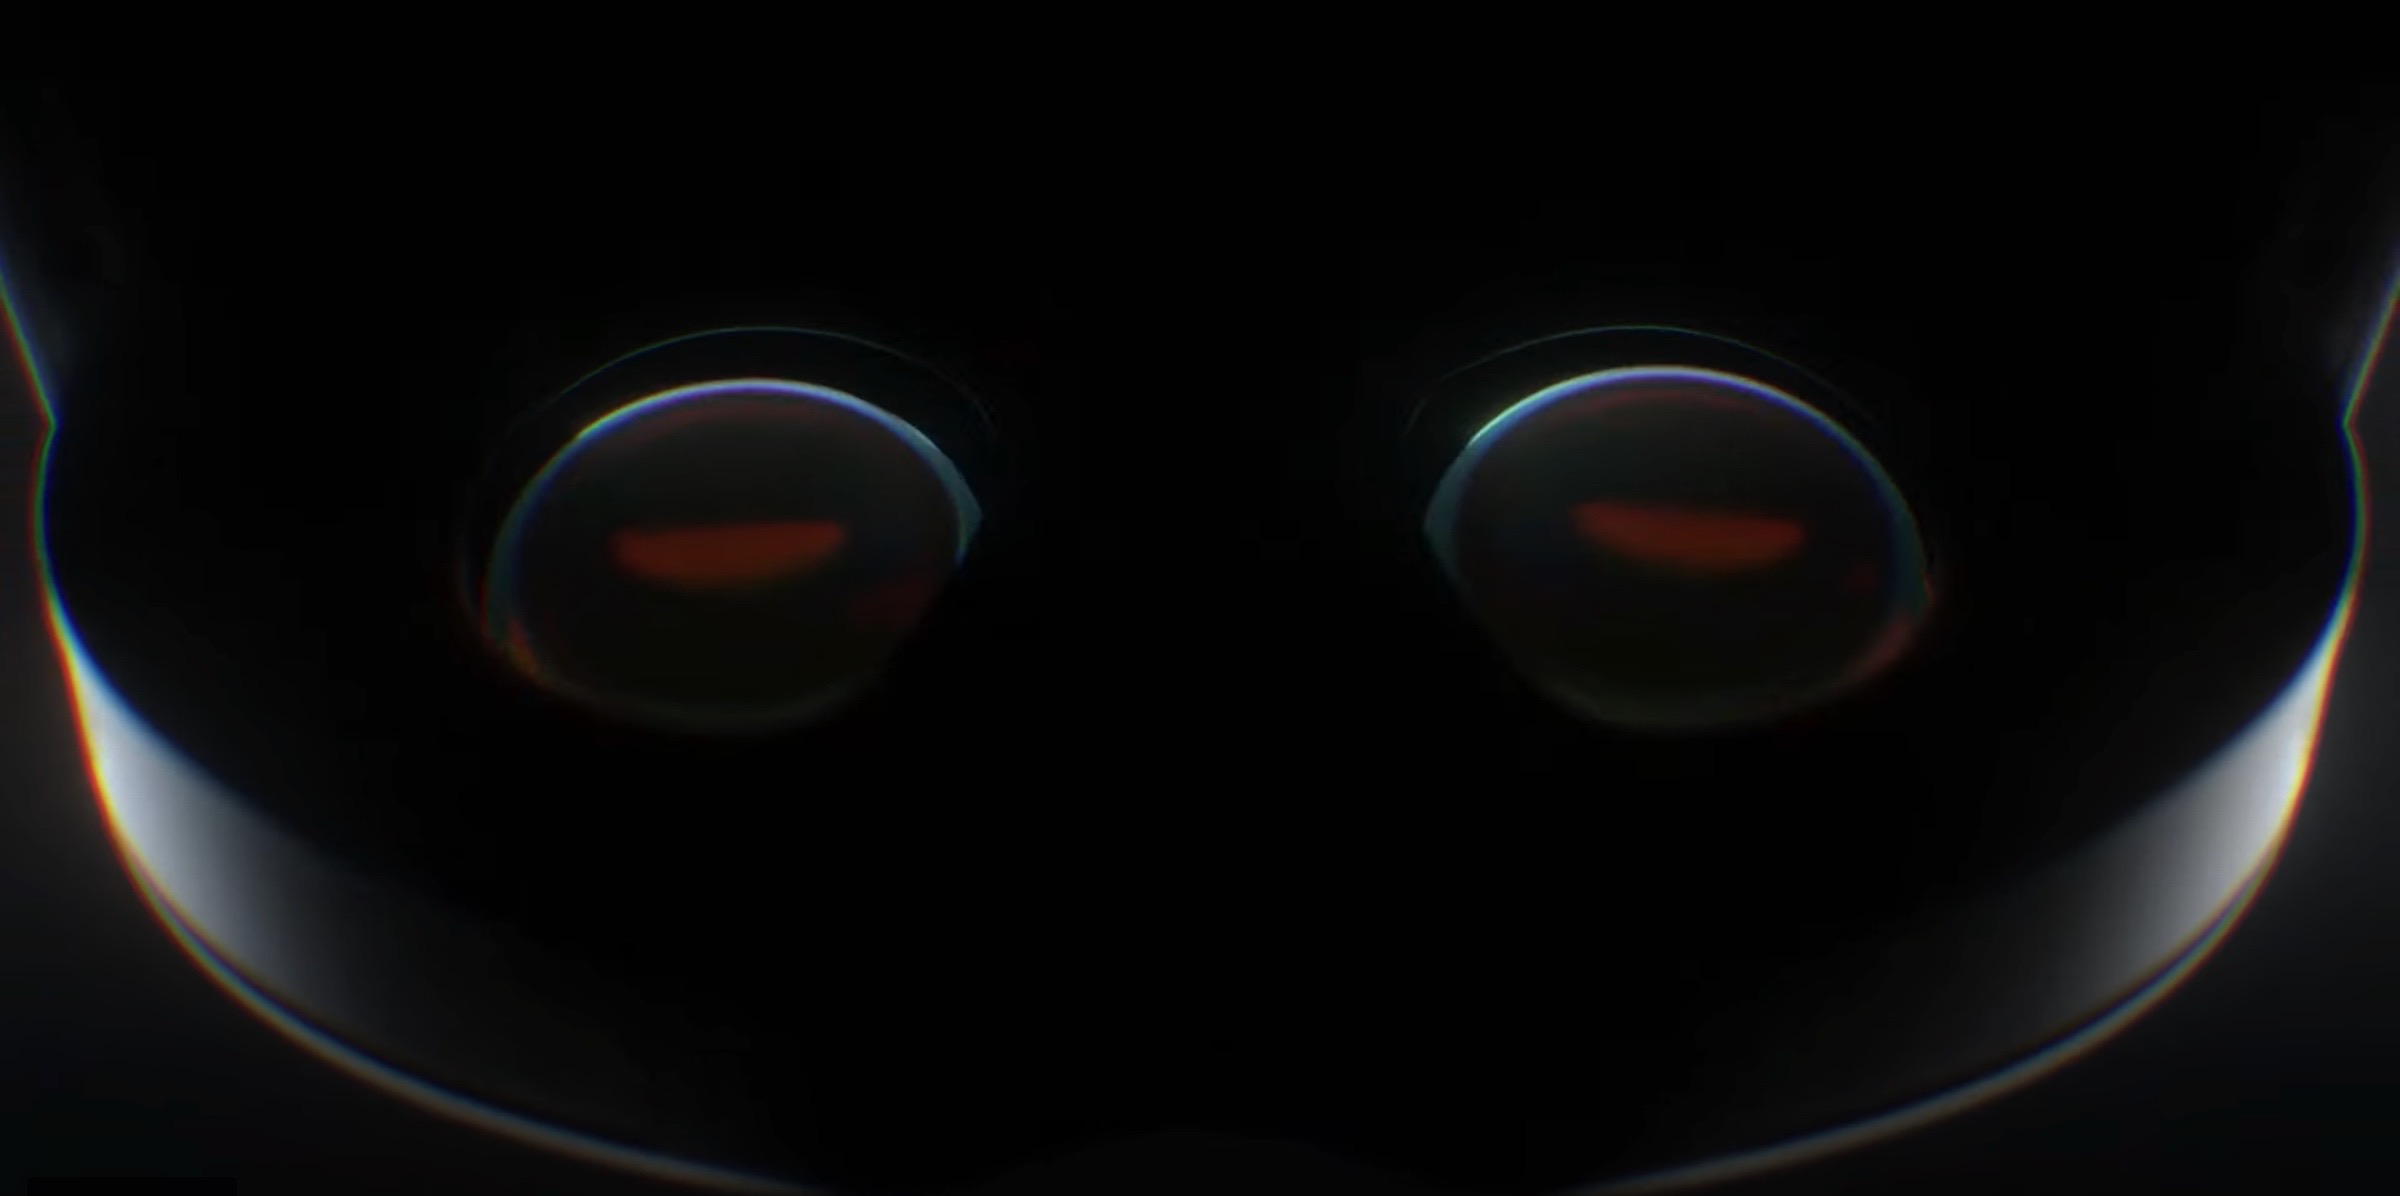 The Morning After: Tai nghe VR cao cấp của Meta được mô tả là 'máy tính xách tay dành cho khuôn mặt'